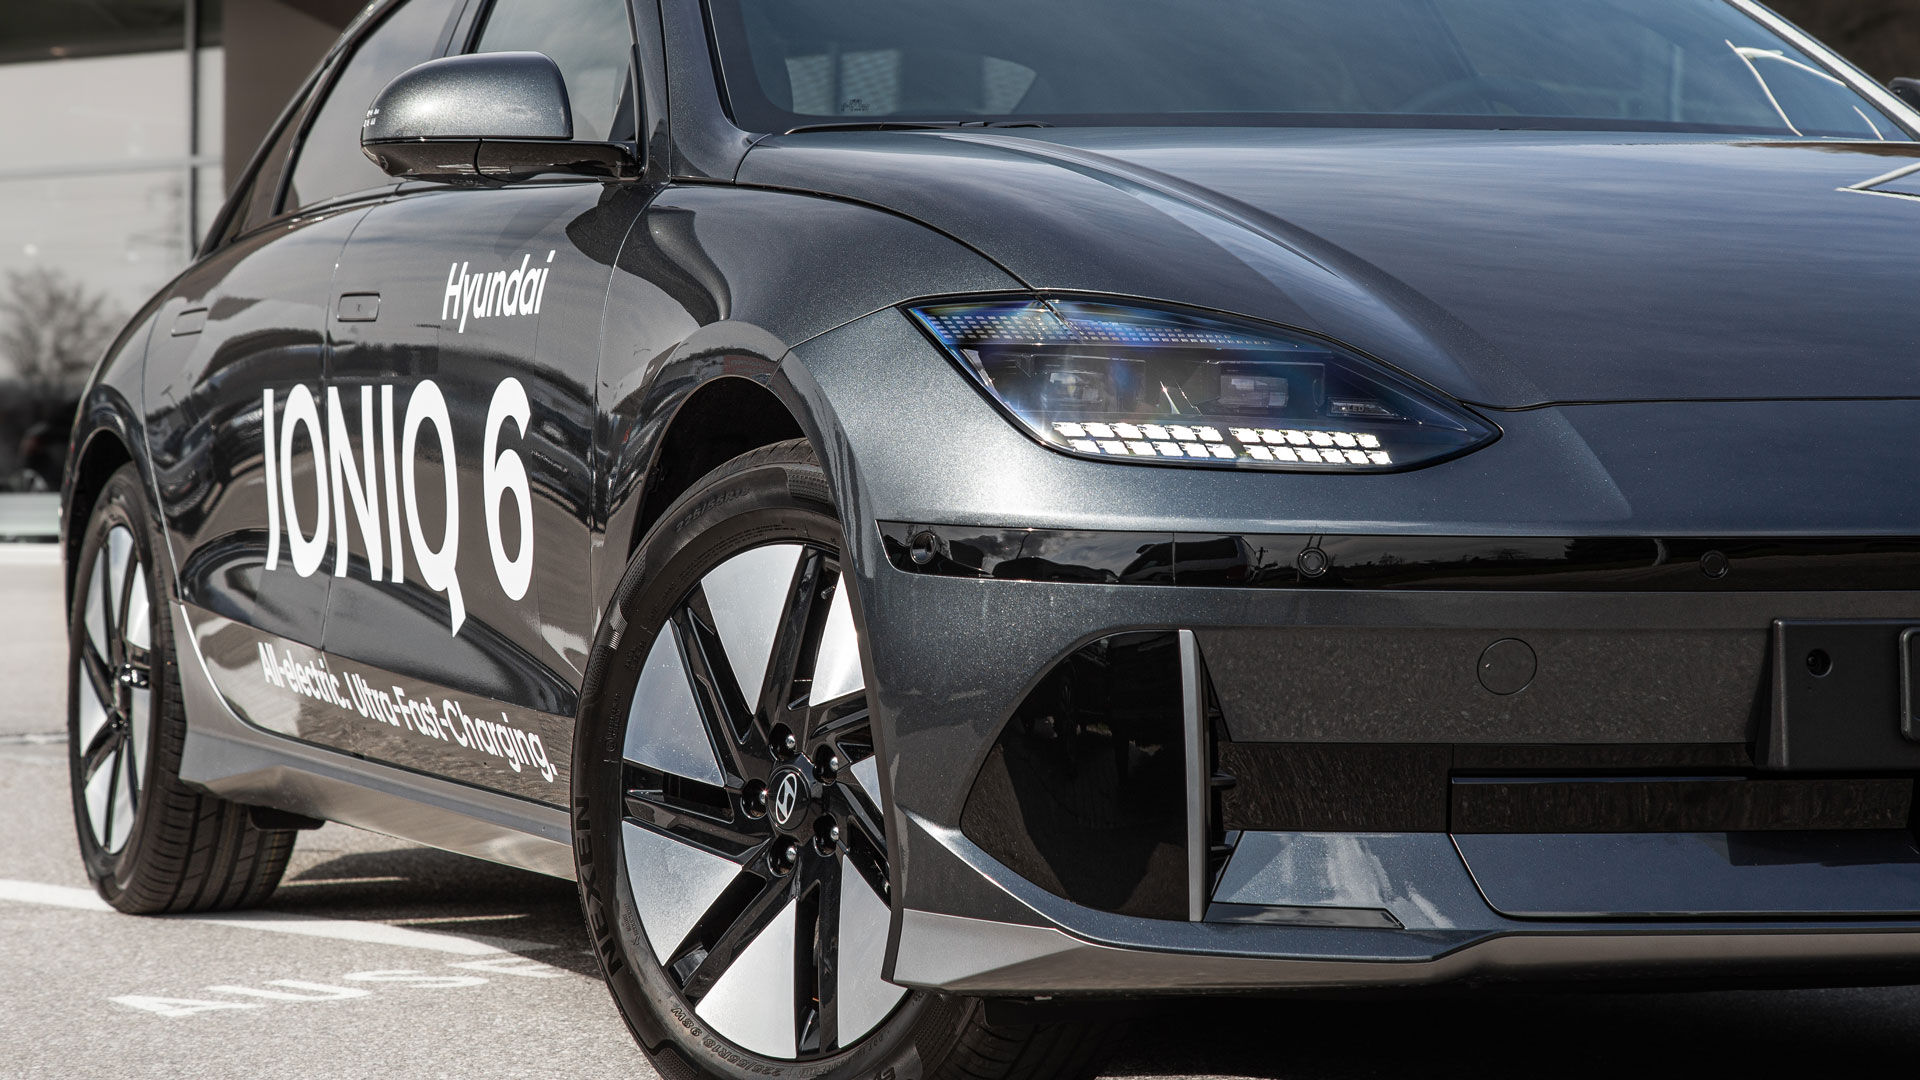 Hyundai enthüllt das Design des vollelektrischen IONIQ 6: aerodynamisch und  stilvoll, mit durchdachtem Innendesign - aktuell